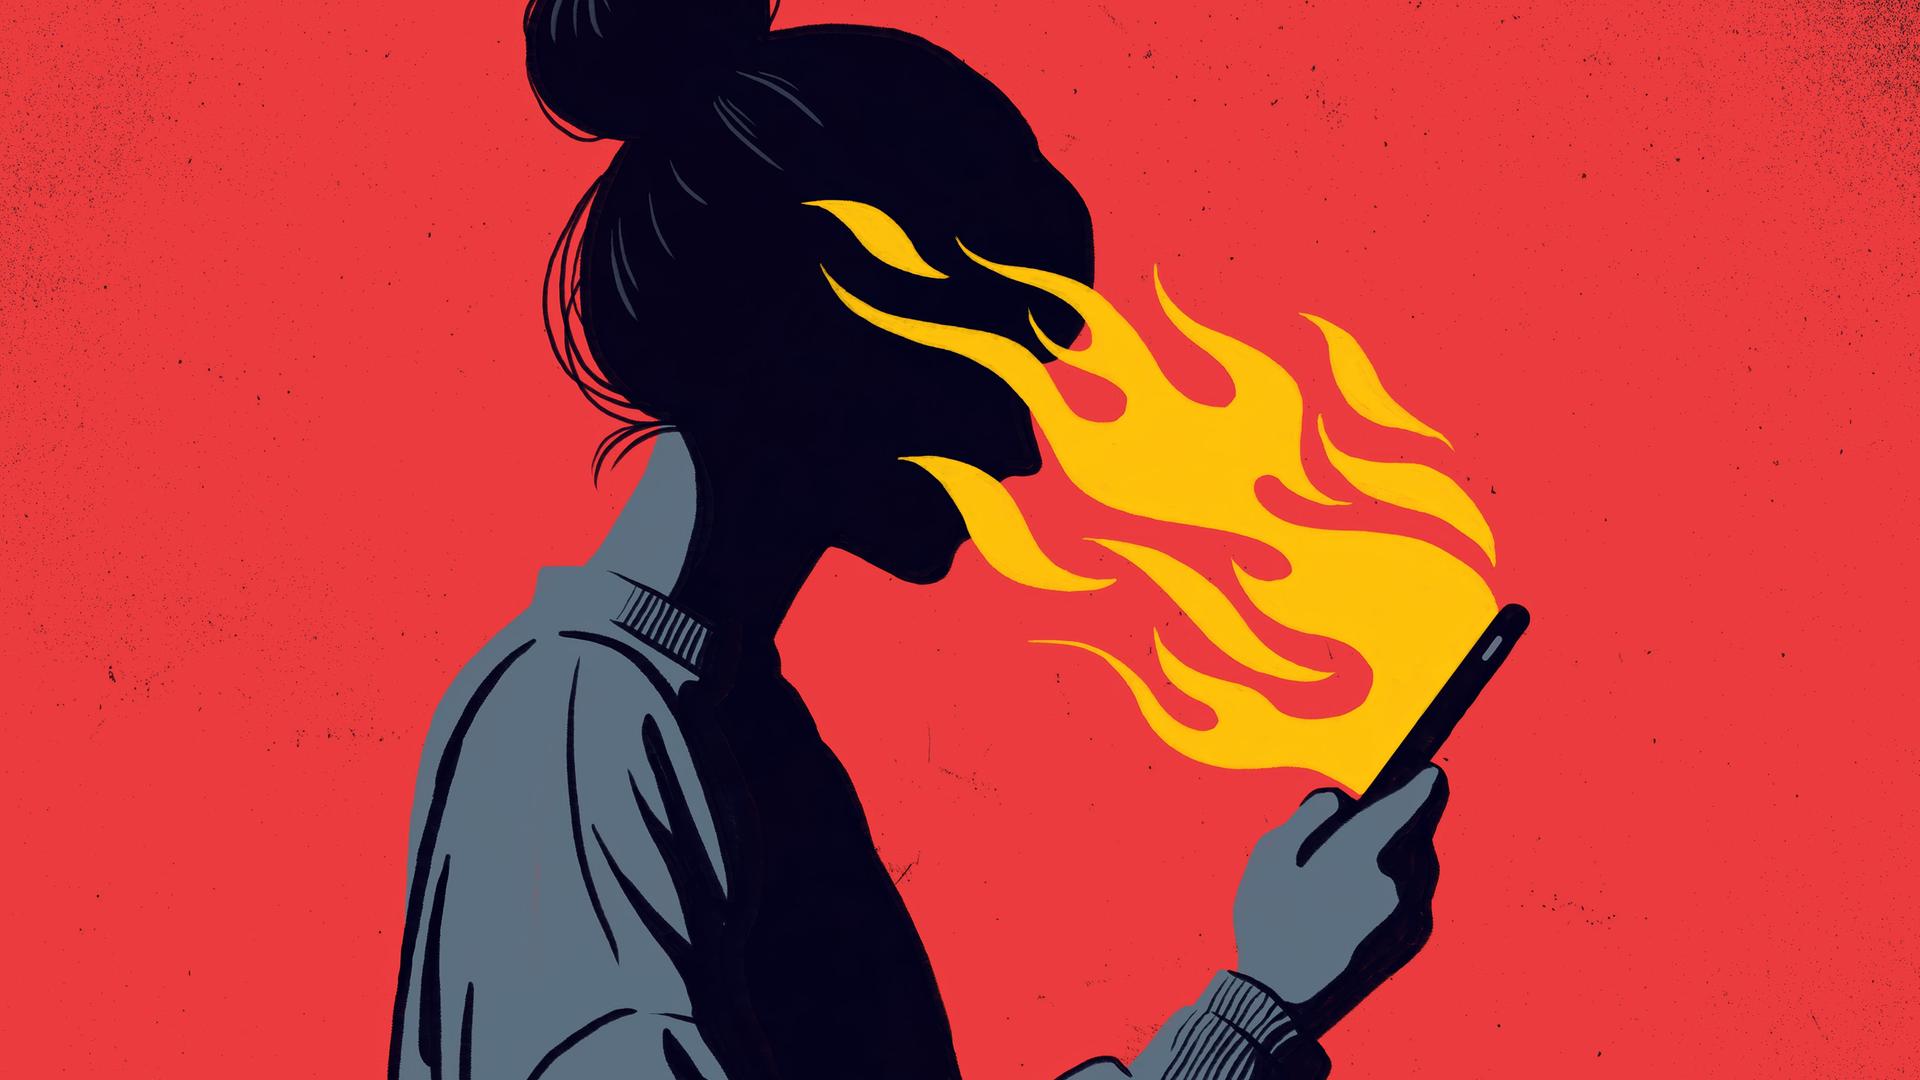 Illustration, die eine Frau mit einem Dutt zeigt, die ein Smartphone in der Hand hält, aus dem orangefarbene Flammen auf ihr Gesicht züngeln. Der Hintergrund ist in einem kräftigen Rot gehalten, das mit der dunklen Silhouette der Frau kontrastiert.